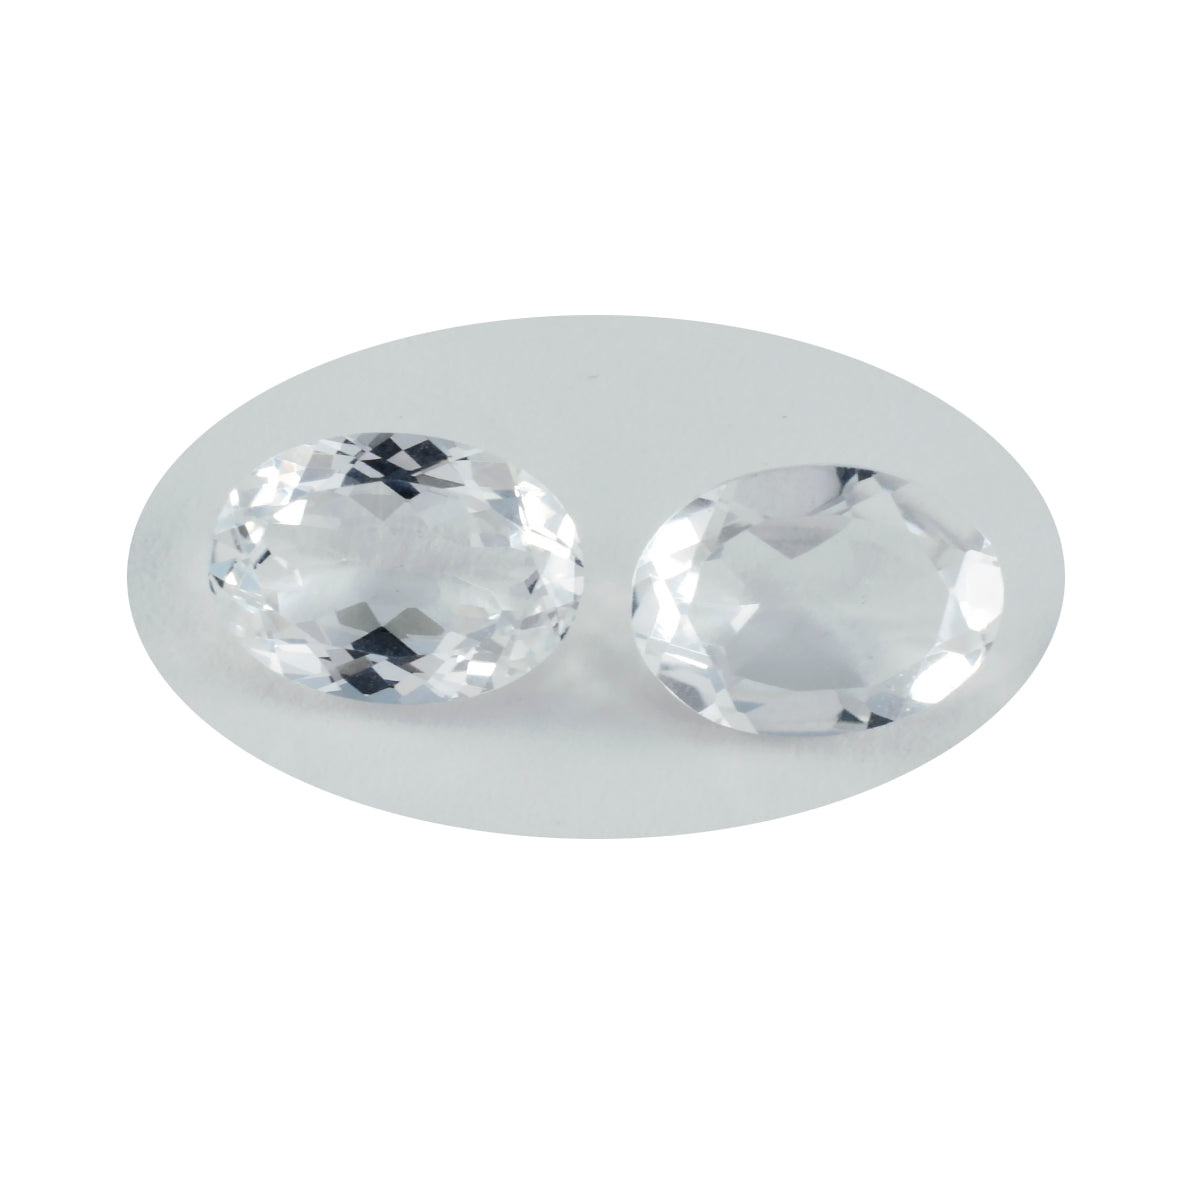 Riyogems 1pc quartz cristal blanc à facettes 10x12mm forme ovale jolie qualité pierres précieuses en vrac